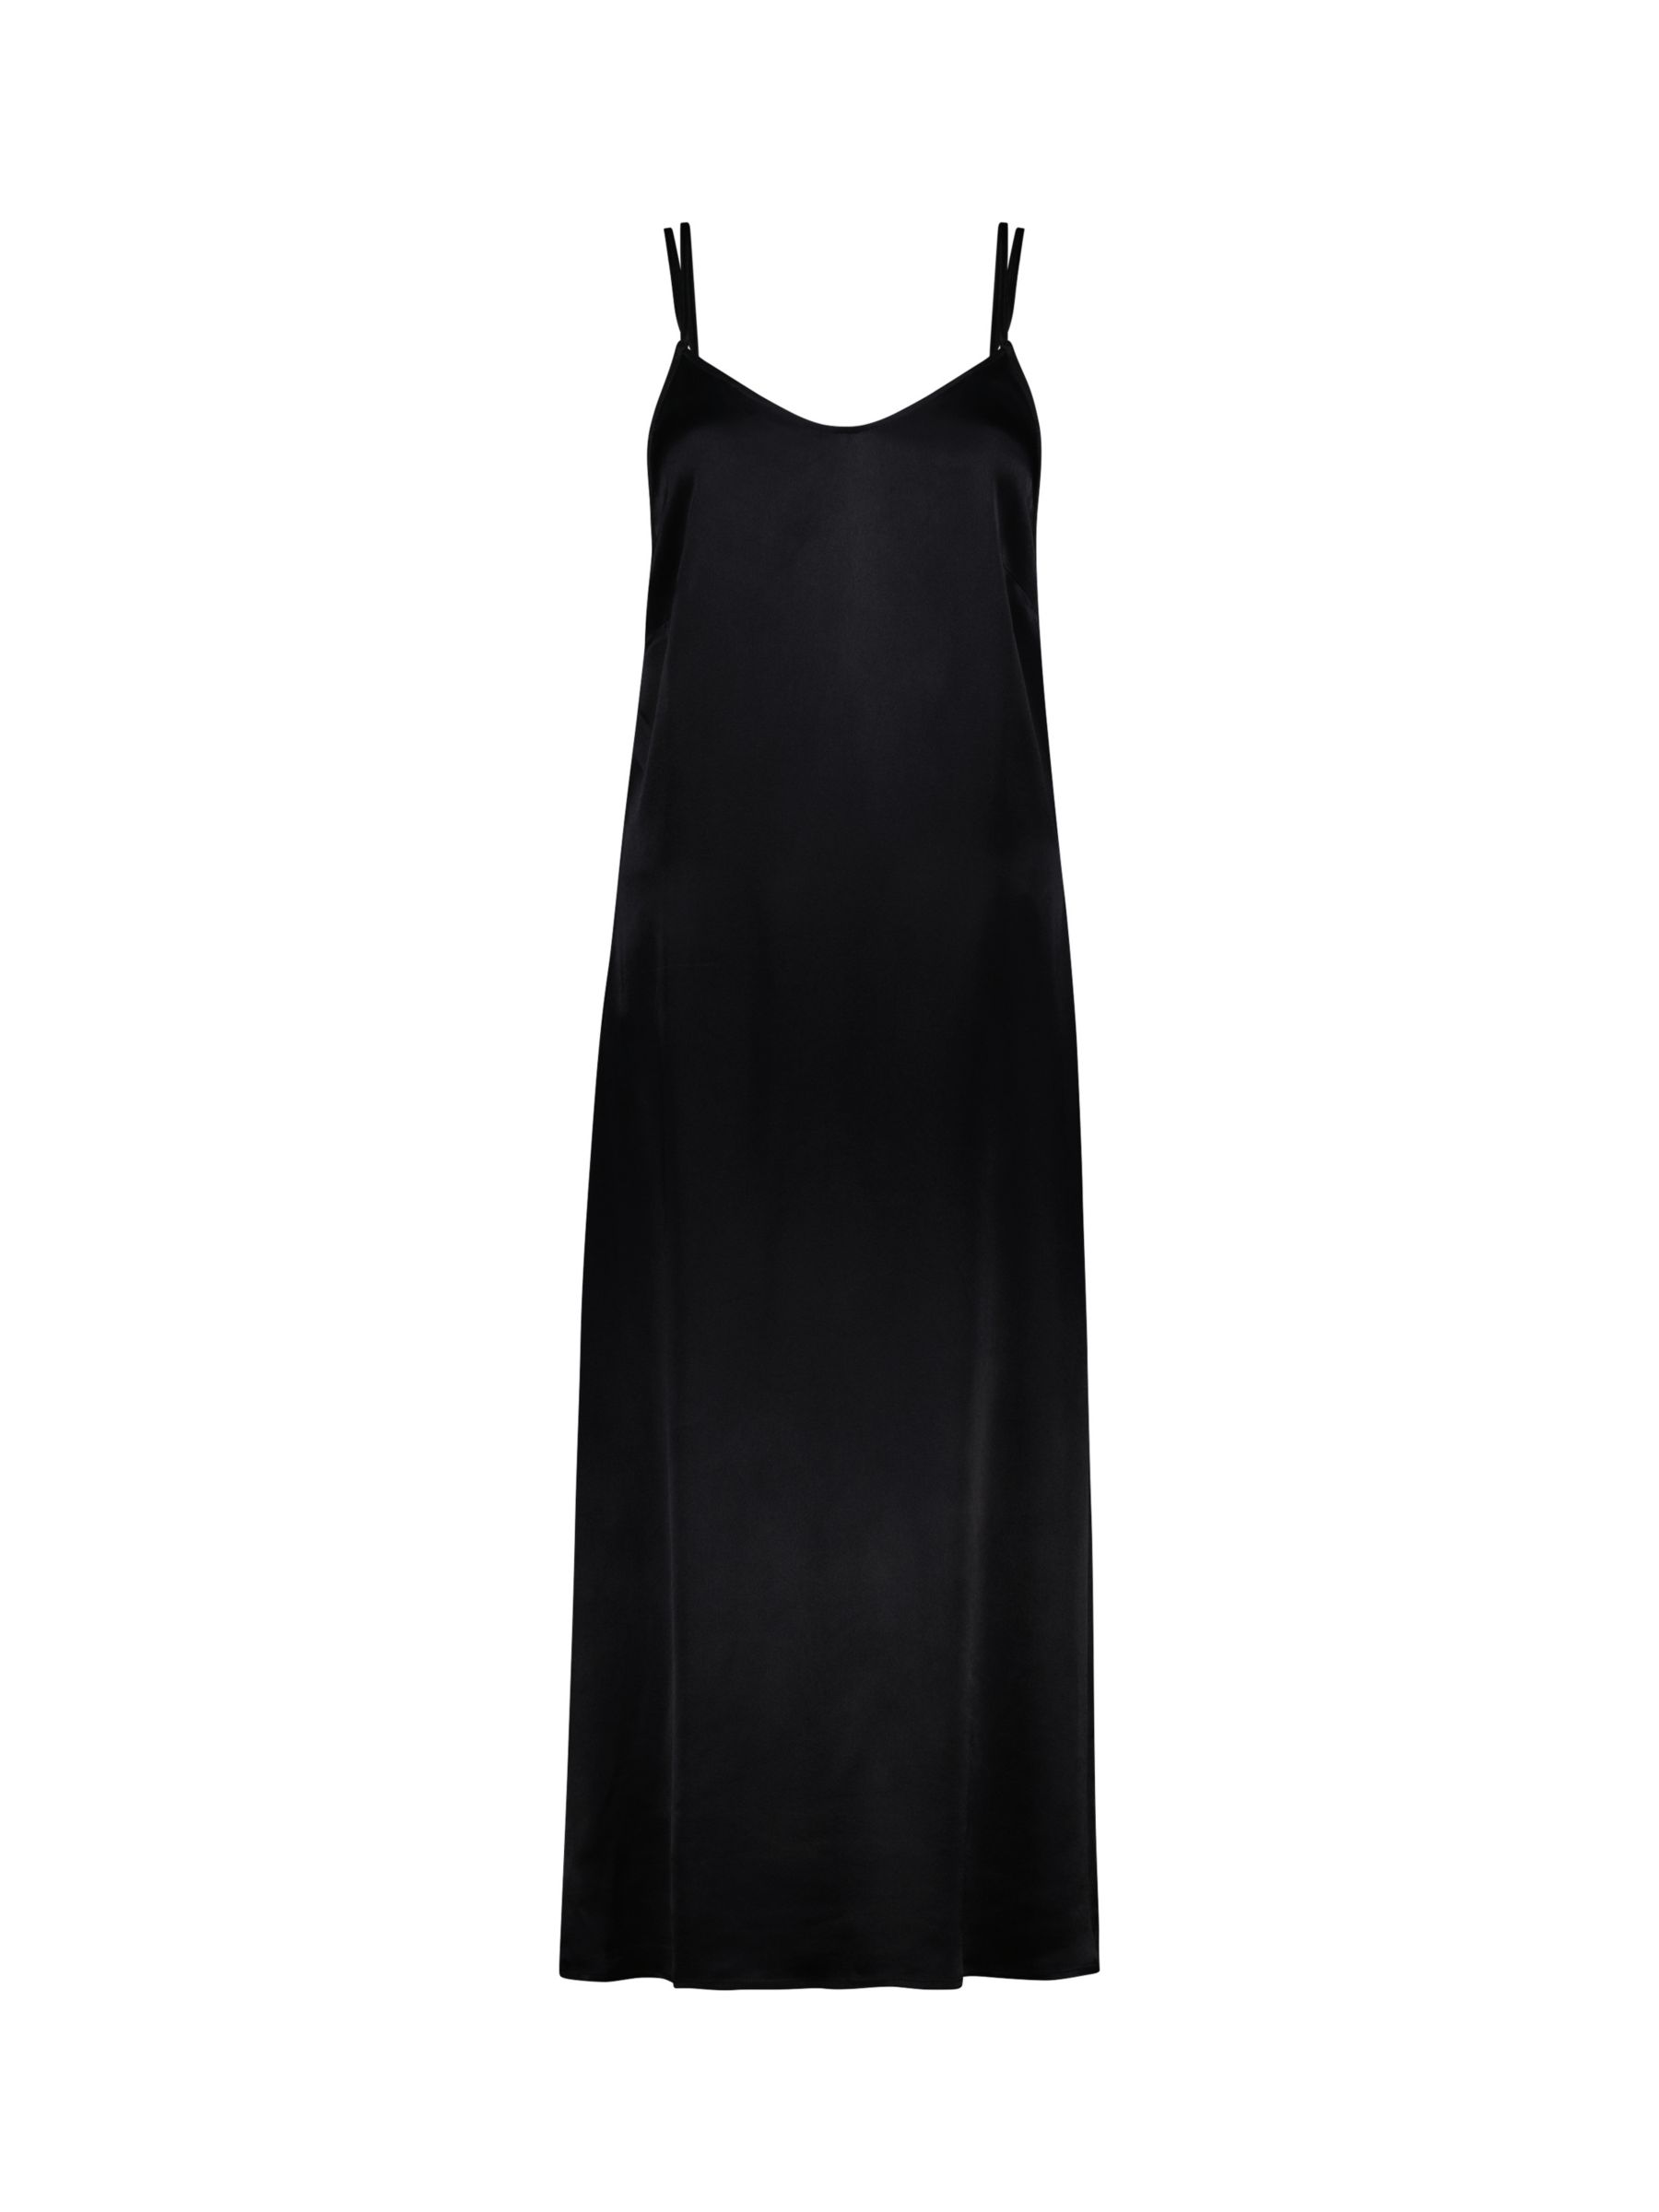 Baukjen Kat Slip Dress, Caviar Black at John Lewis & Partners